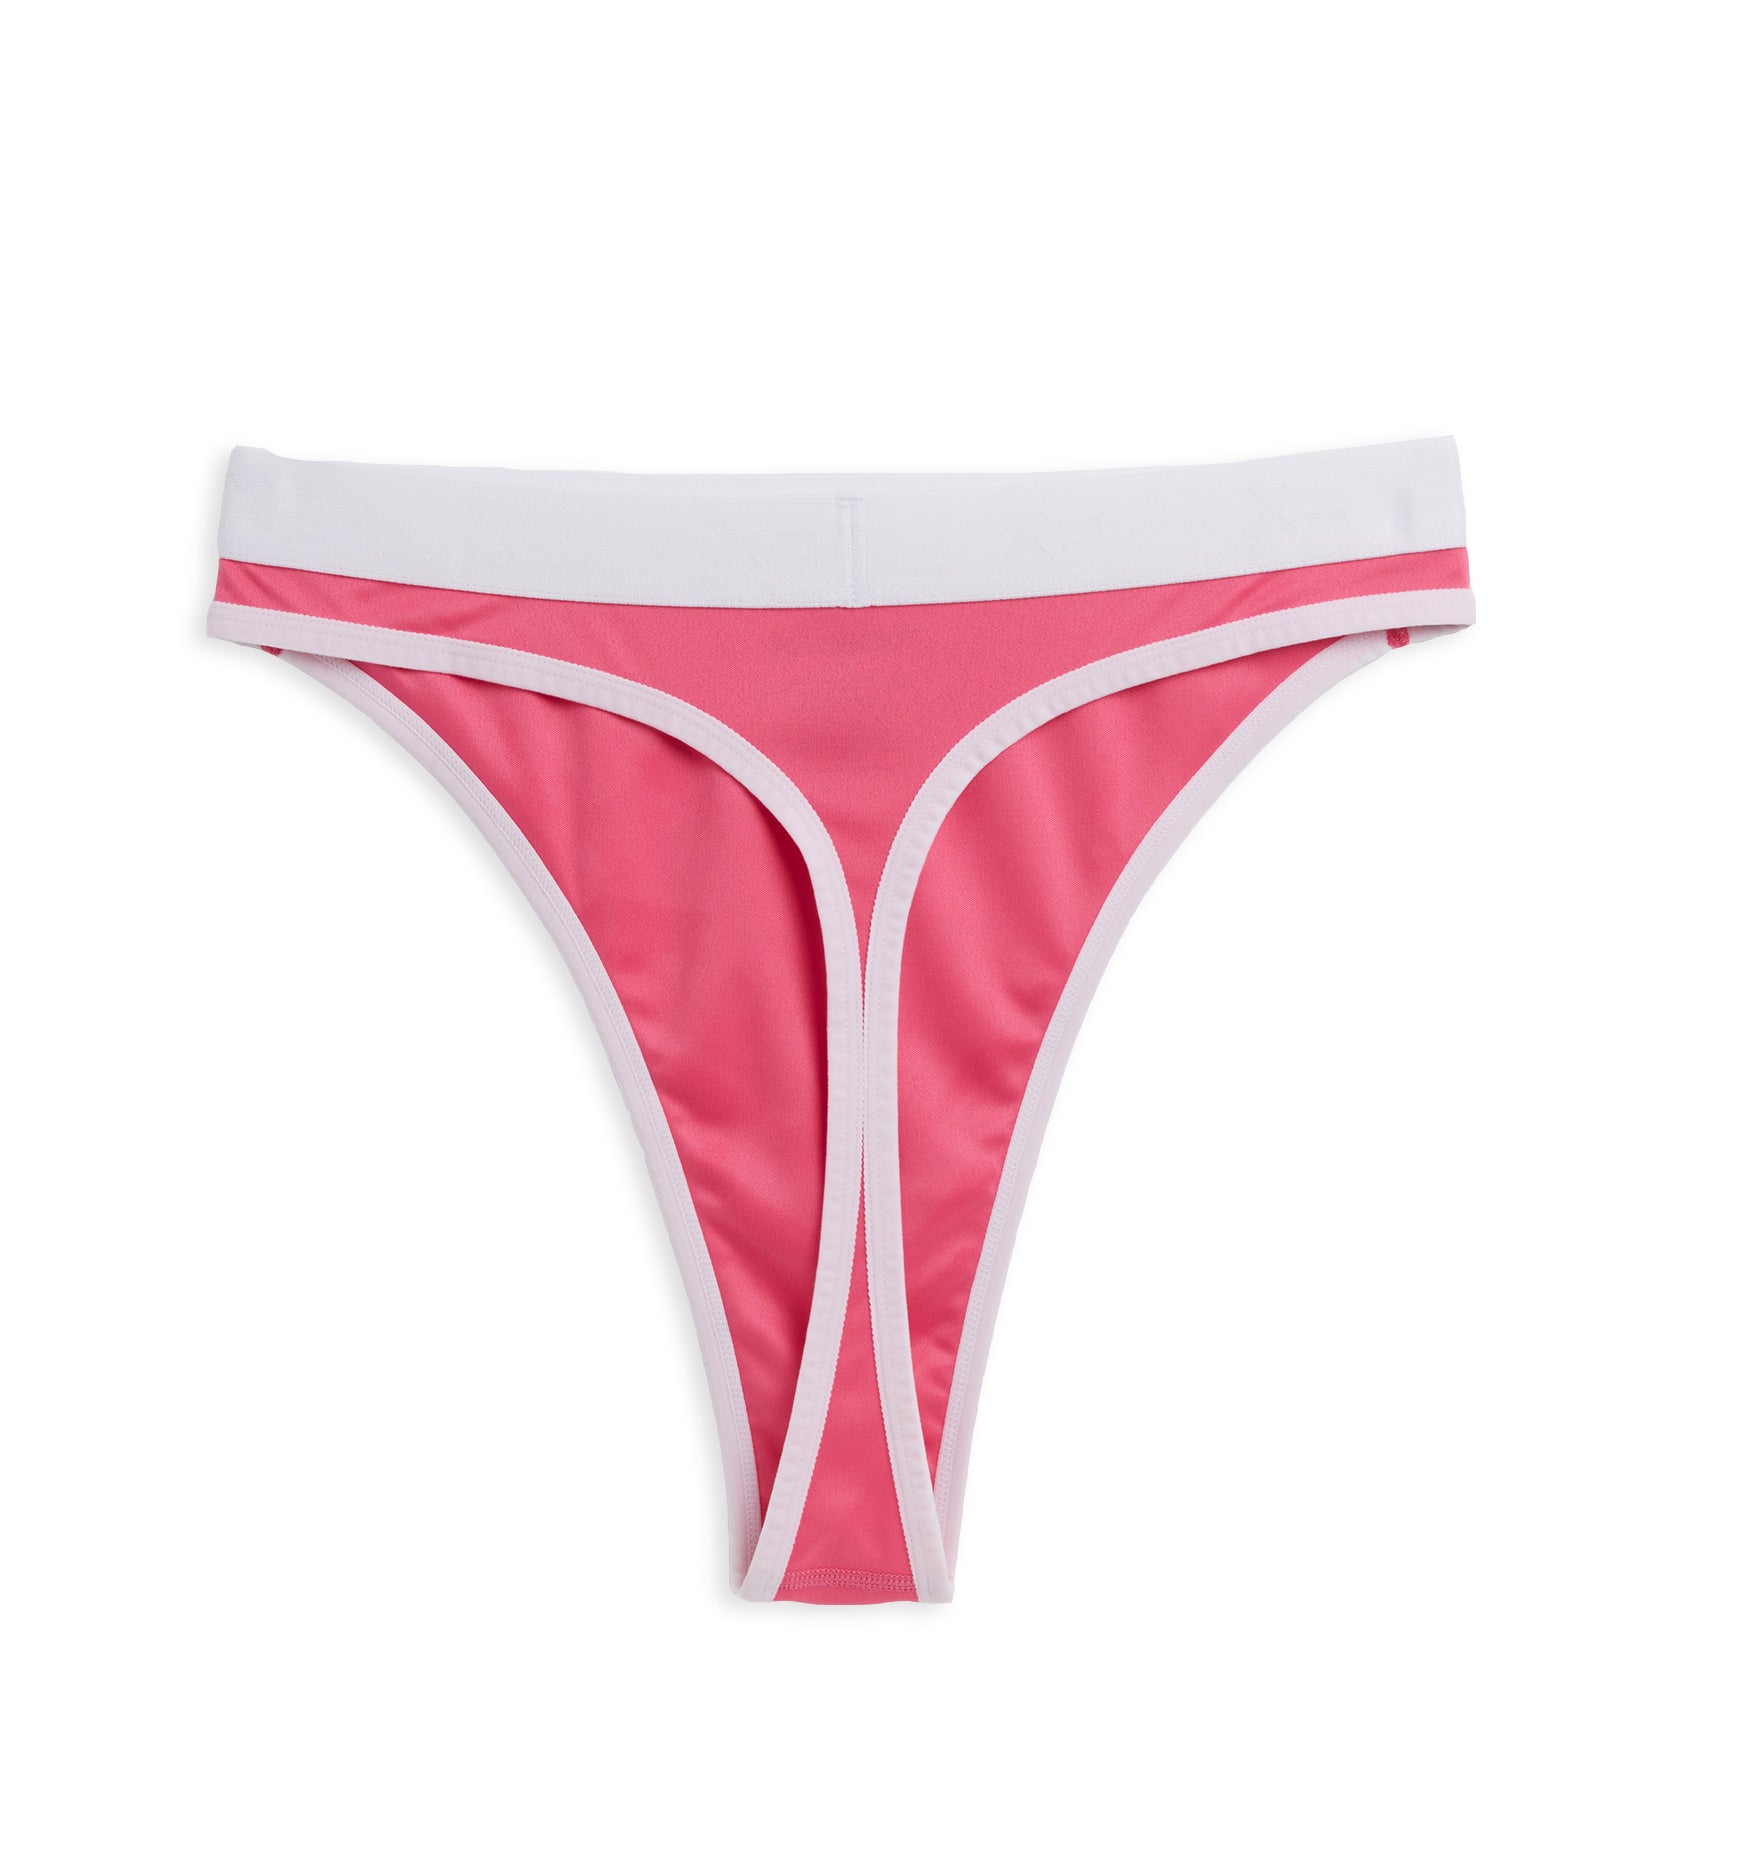 Tucking Gaff Panties For Men Hot Pink